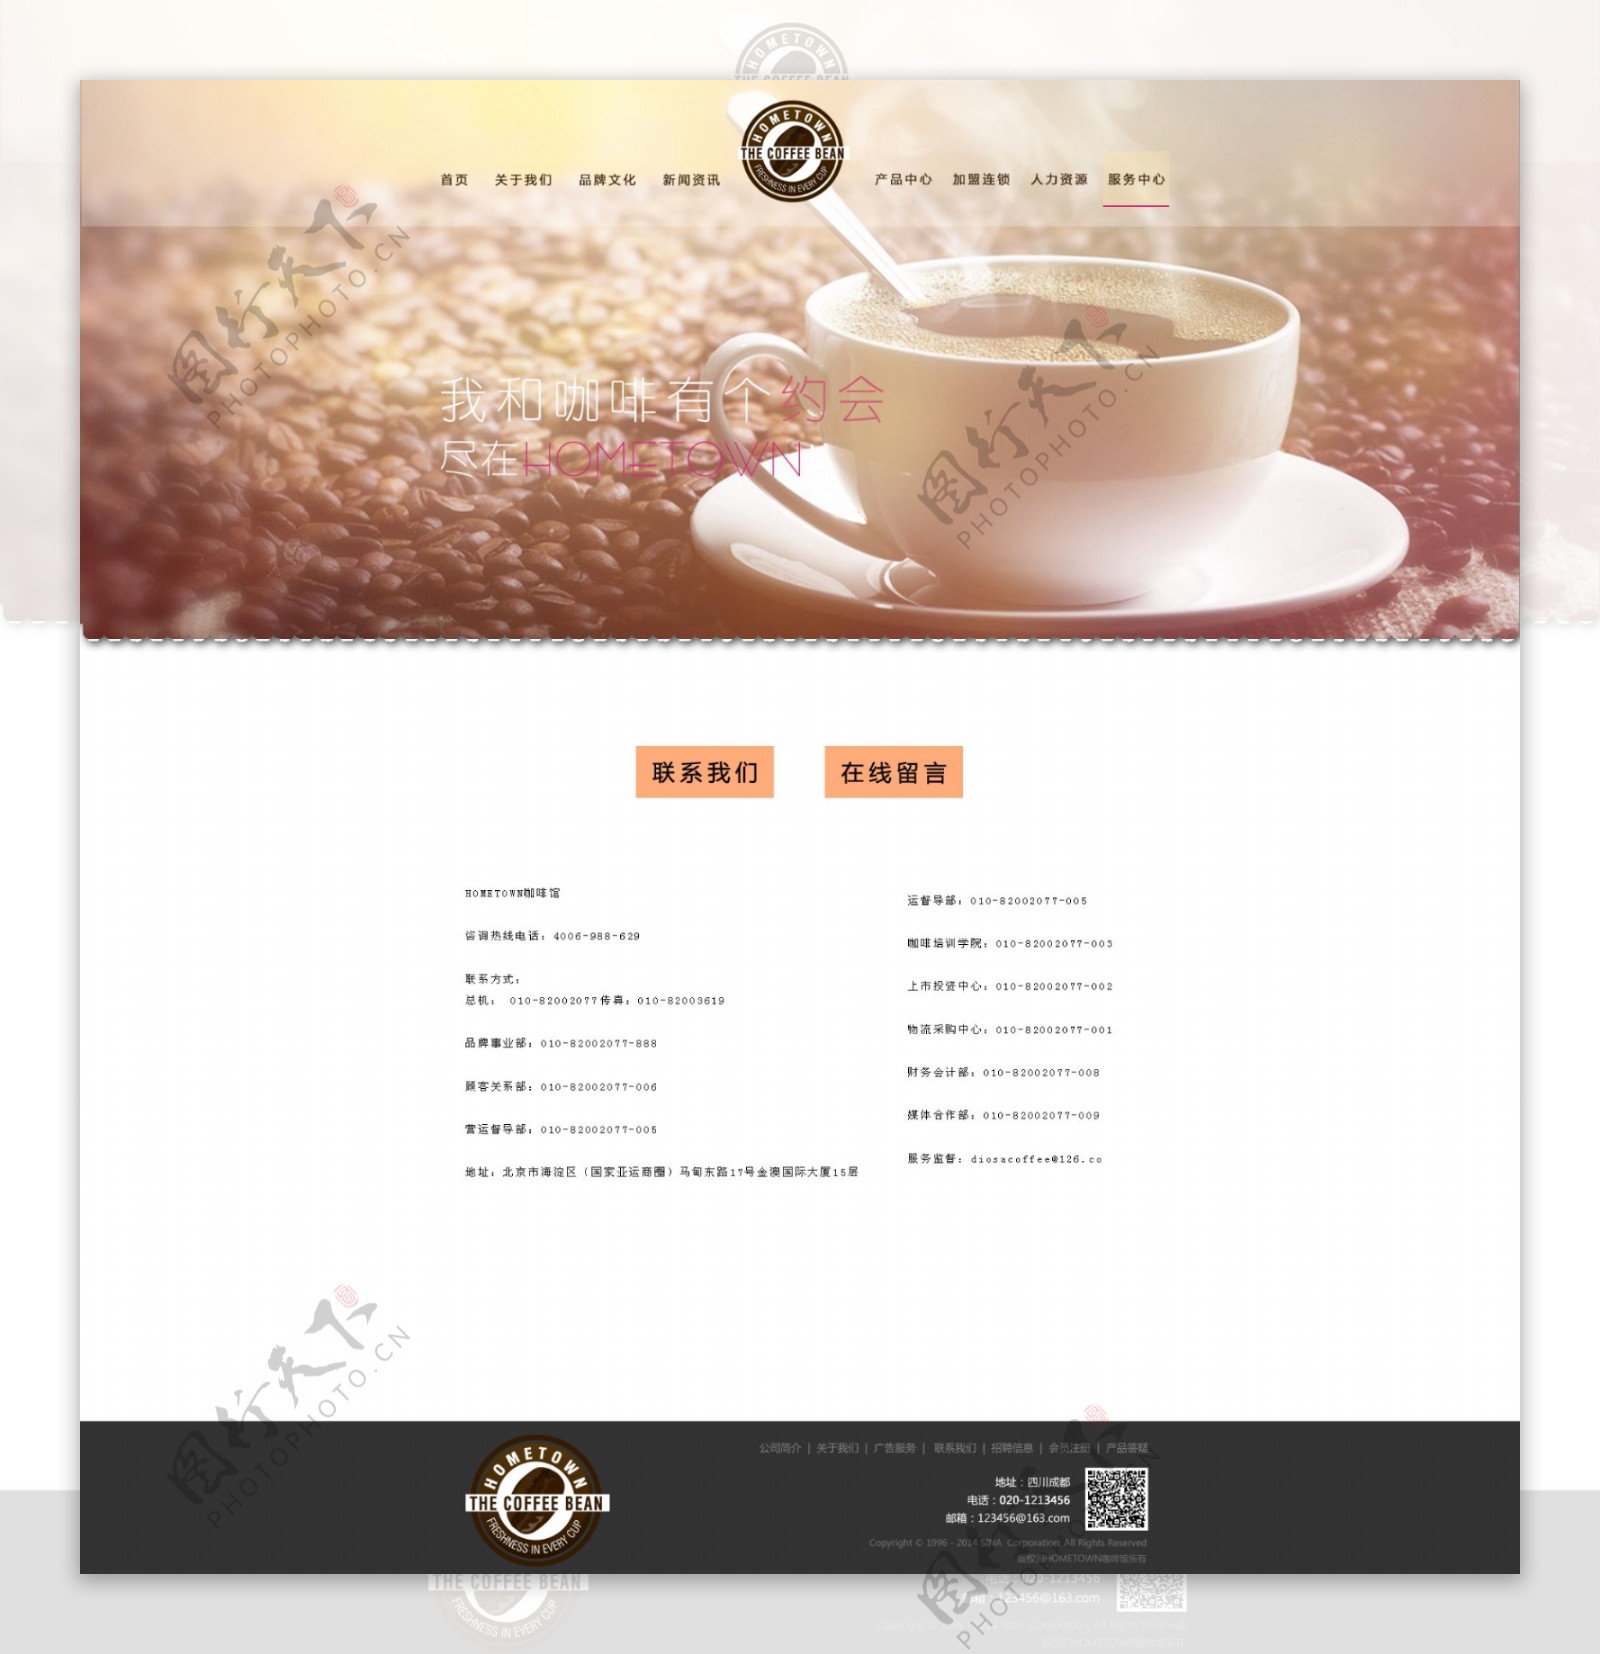 美味咖啡网页psd模板